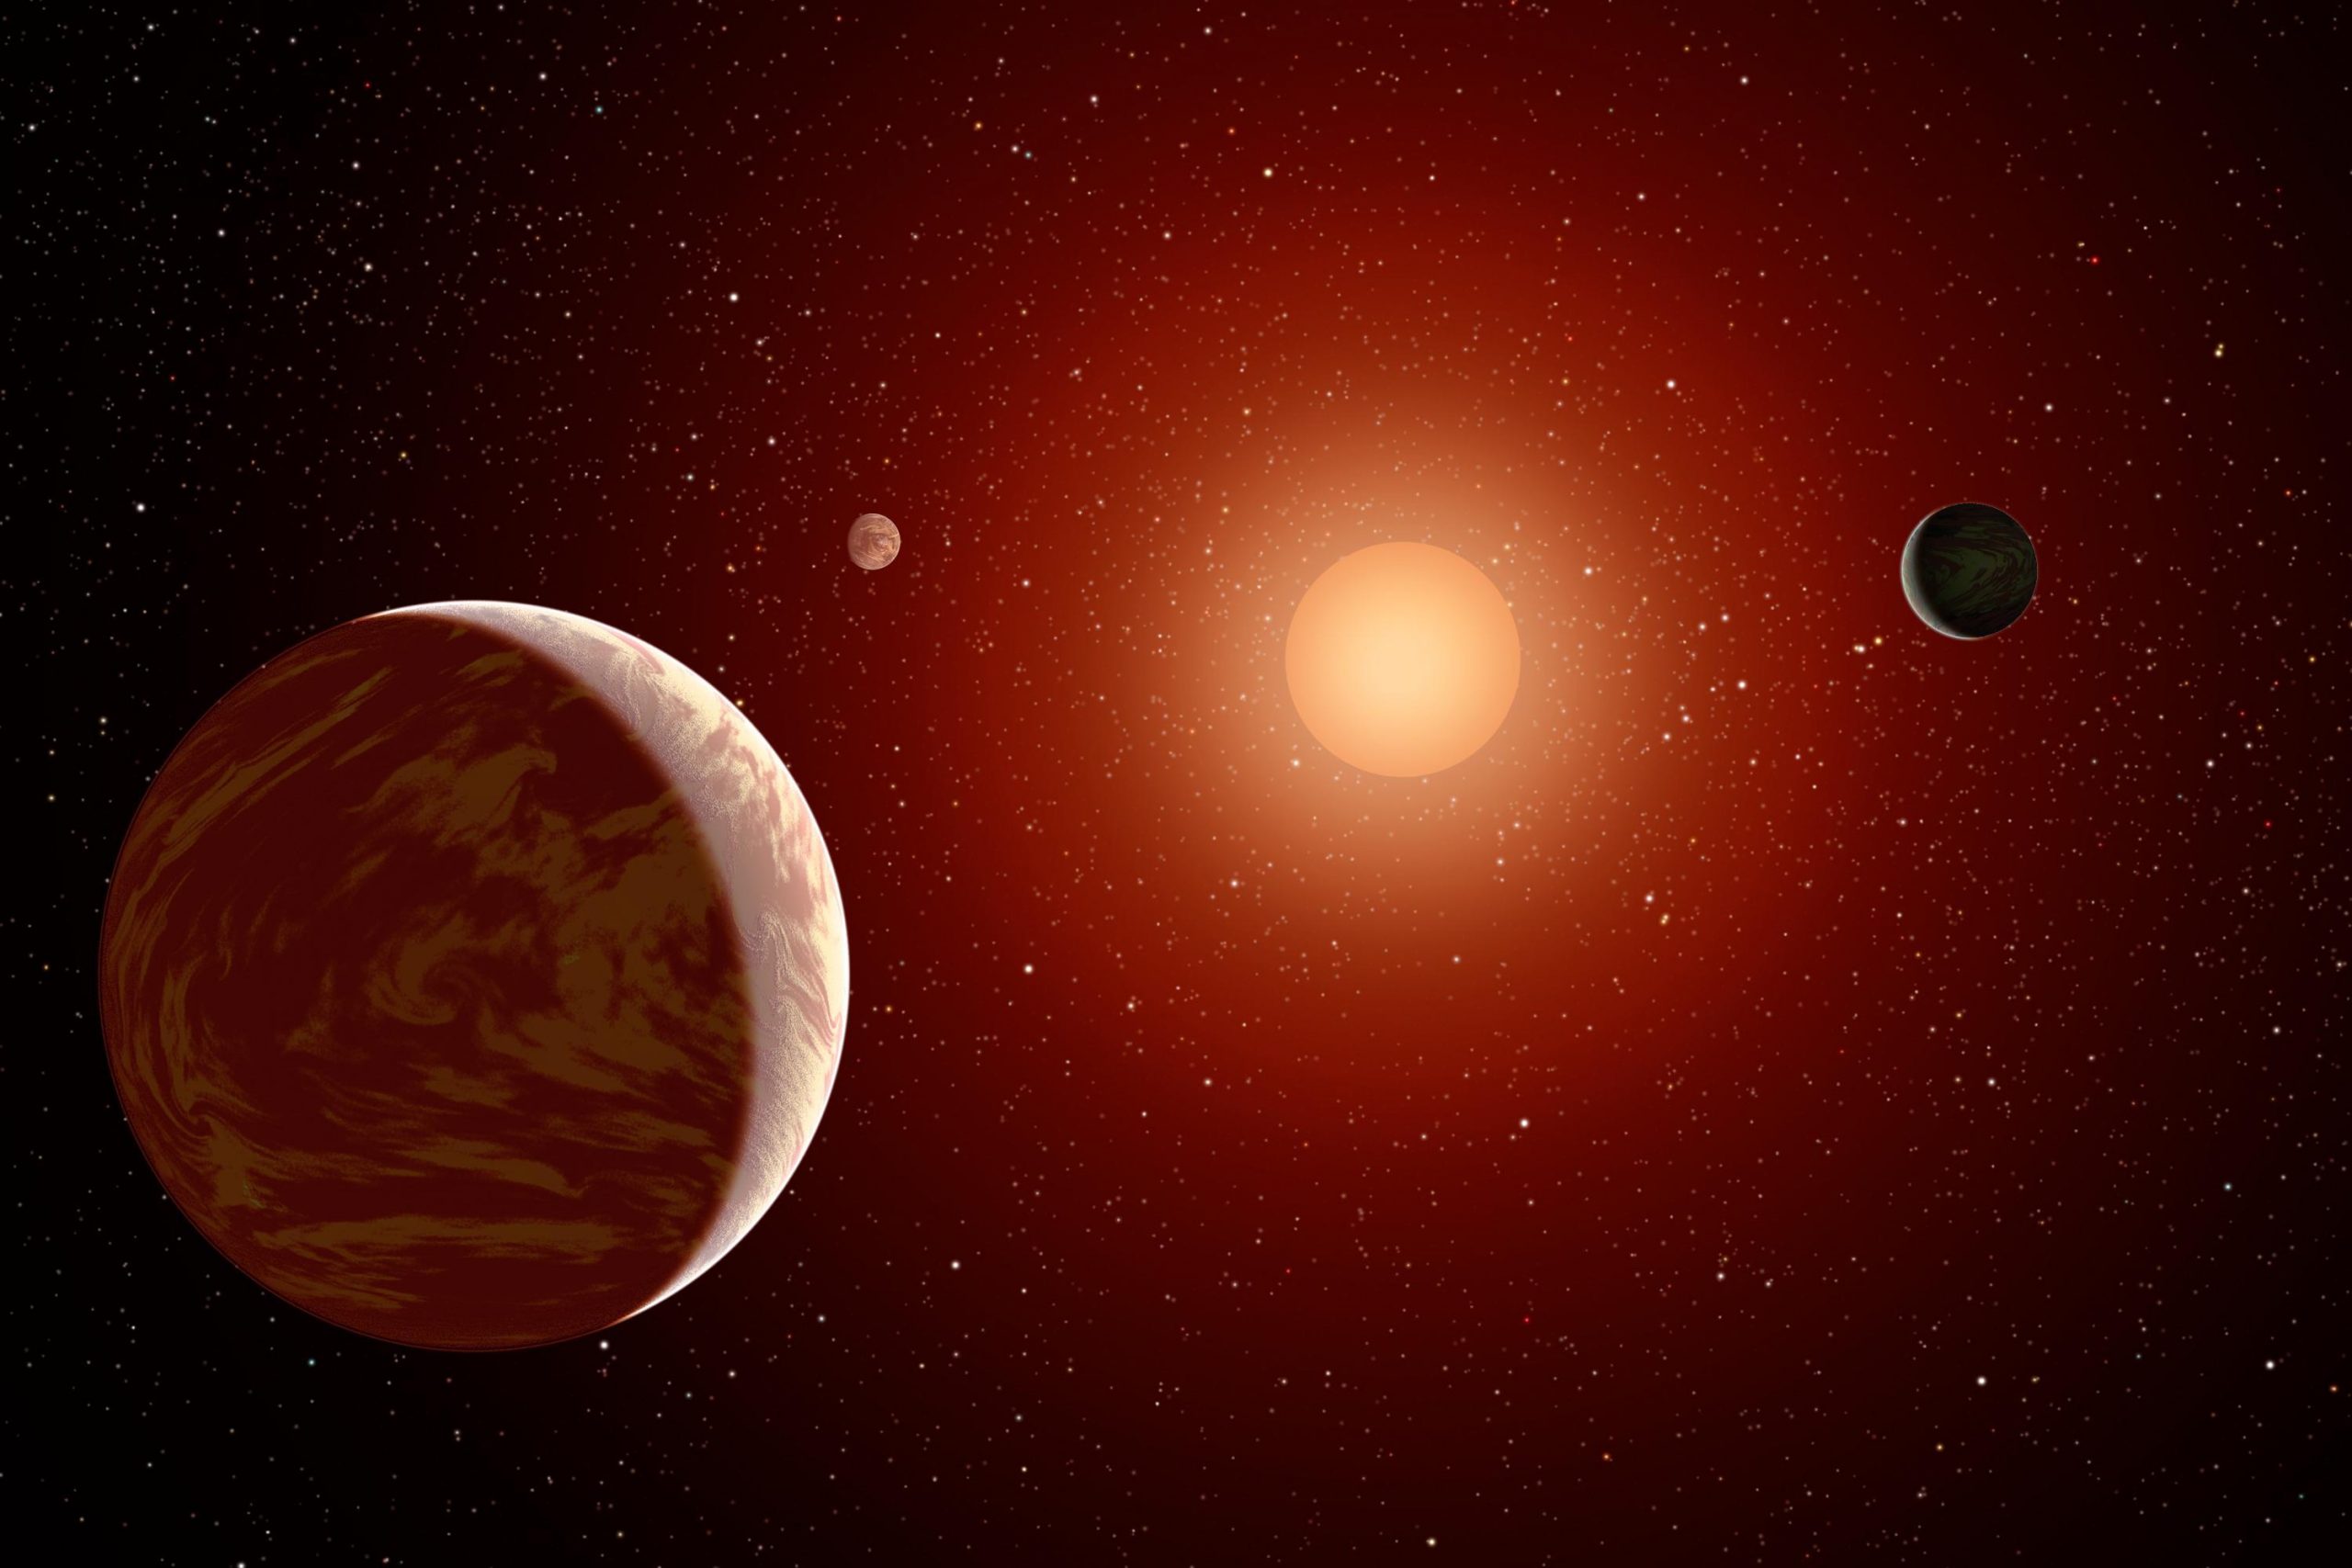 Σύμπαν: «Εκατοντάδες εκατομμύρια φιλόξενοι πλανήτες» μας περιμένουν για μετακόμιση